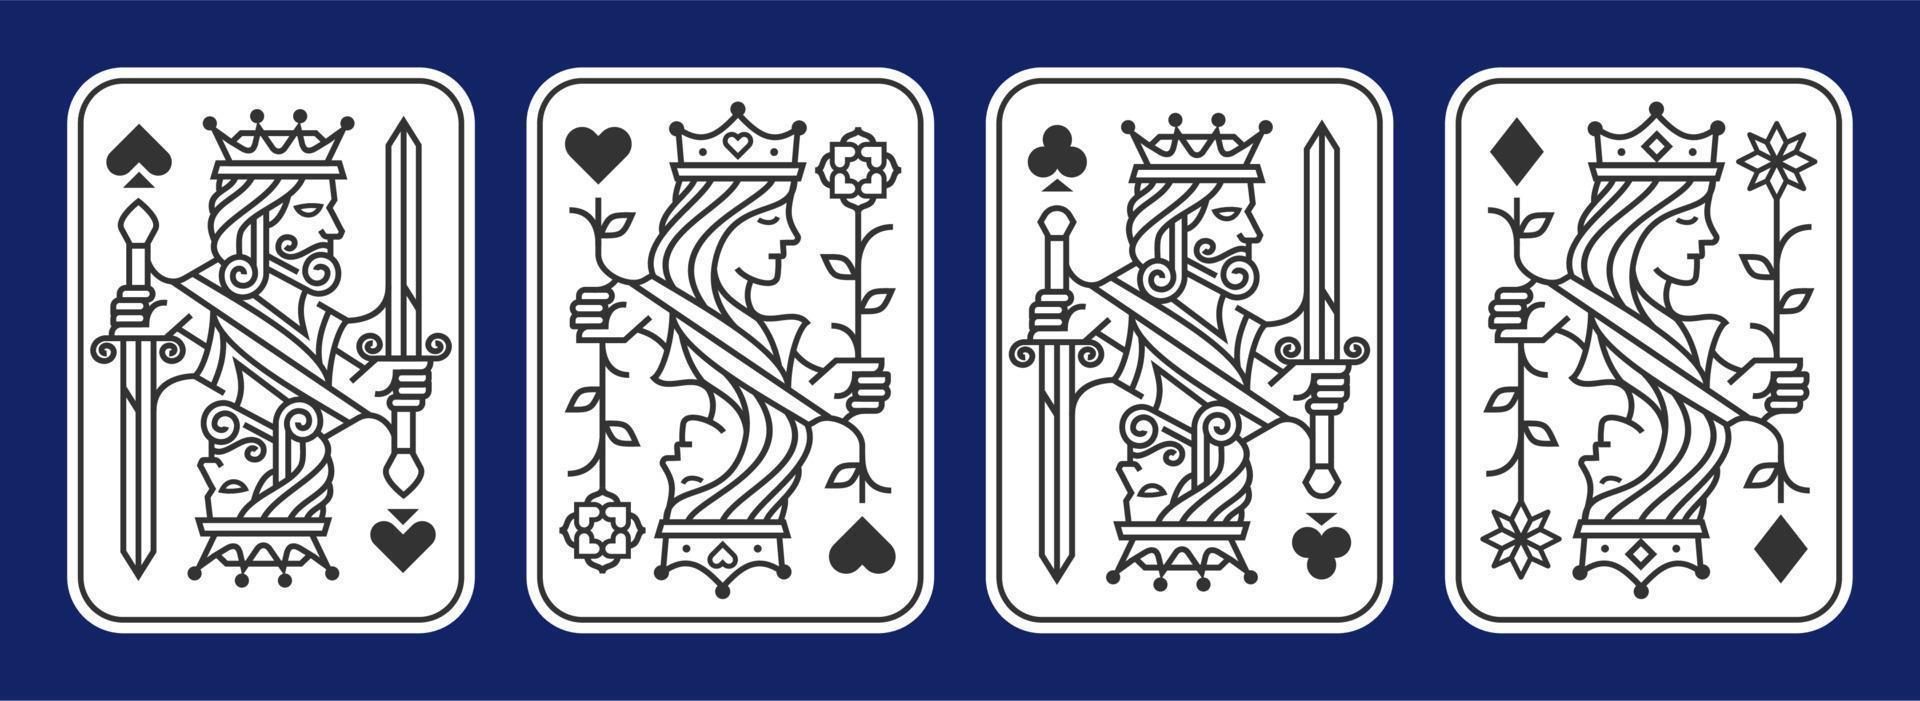 Satz von König und Königin Spielkarte Vektor-Illustration Satz von Herzen, Spaten, Diamanten und Keulen, königliche Karten-Design-Kollektion vektor